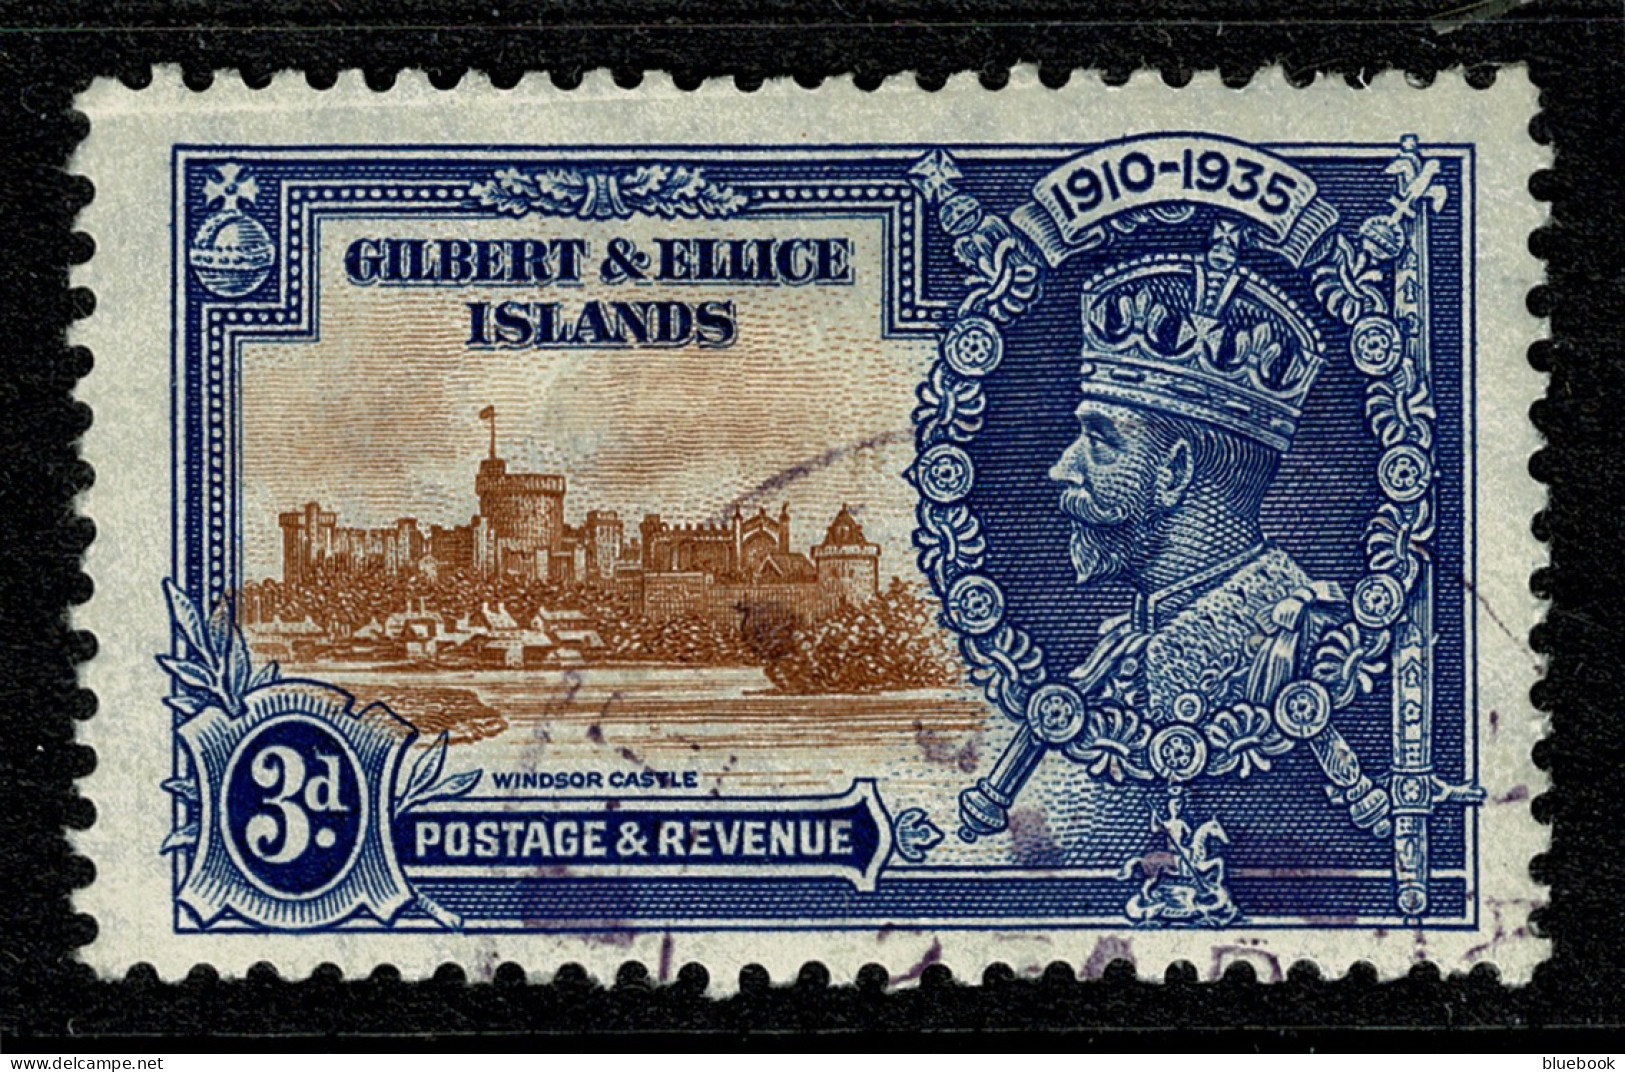 Ref 1621 - Gilbert & Ellice Islands 1925 KGV Silver Jubilee 3d SG 38 - Fine Used Stamp - Gilbert & Ellice Islands (...-1979)